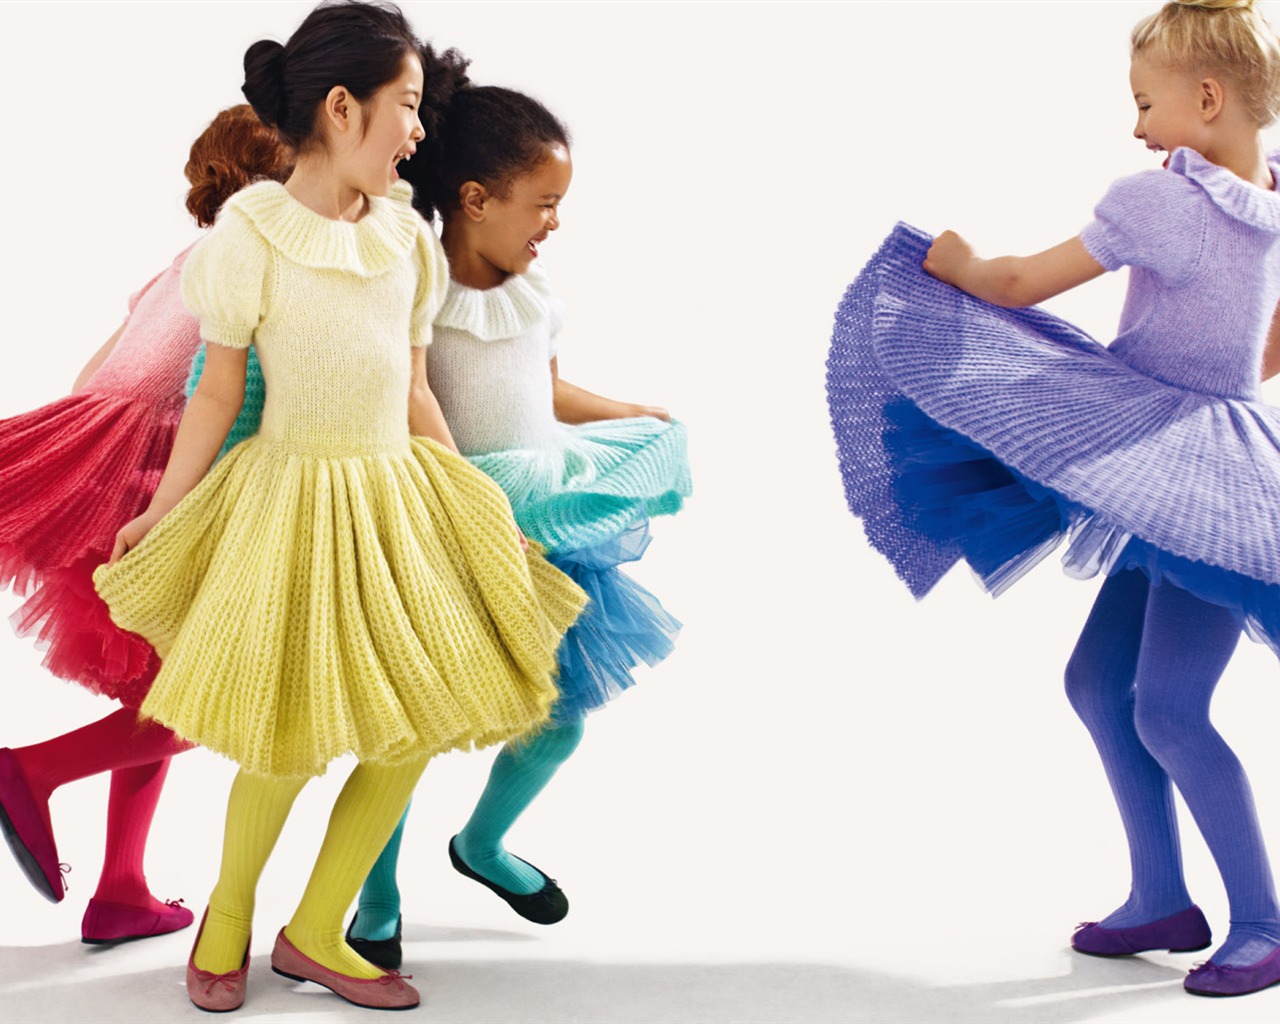 Colorful Children's Fashion Wallpaper (3) #13 - 1280x1024